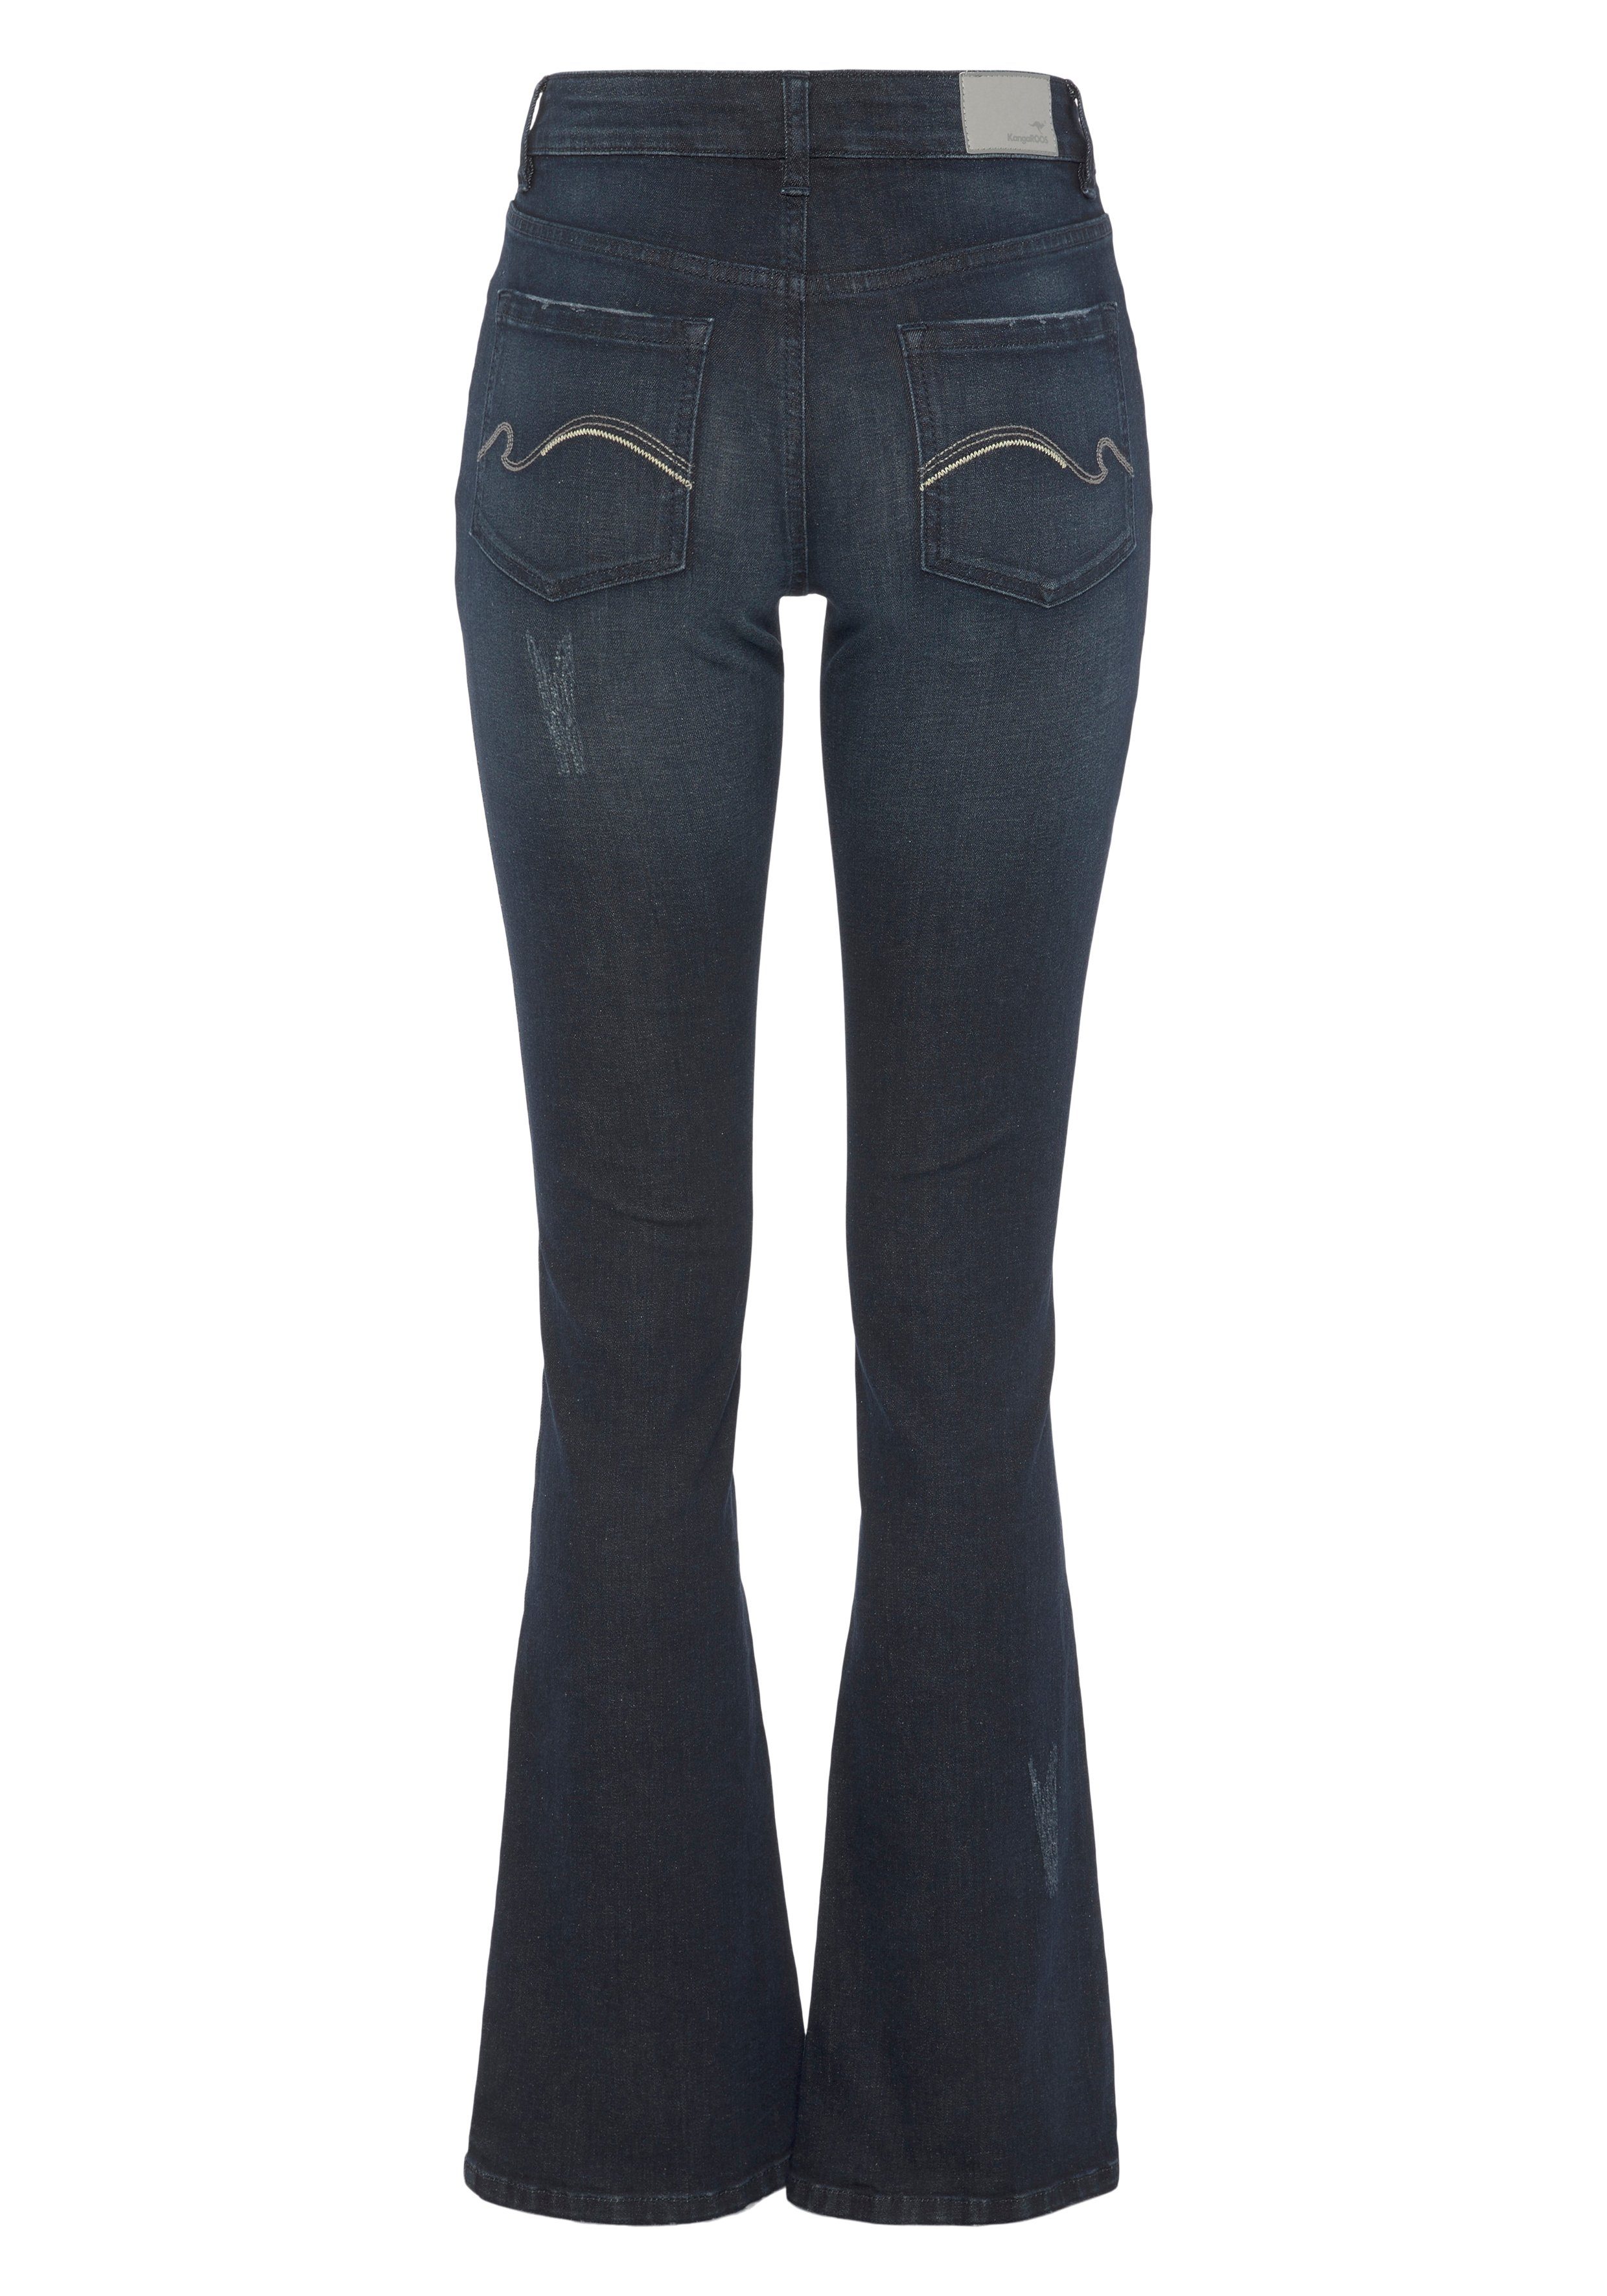 KangaROOS 5-Pocket-Jeans BOOT CUT -NEUE used blue KOLLEKTION dark